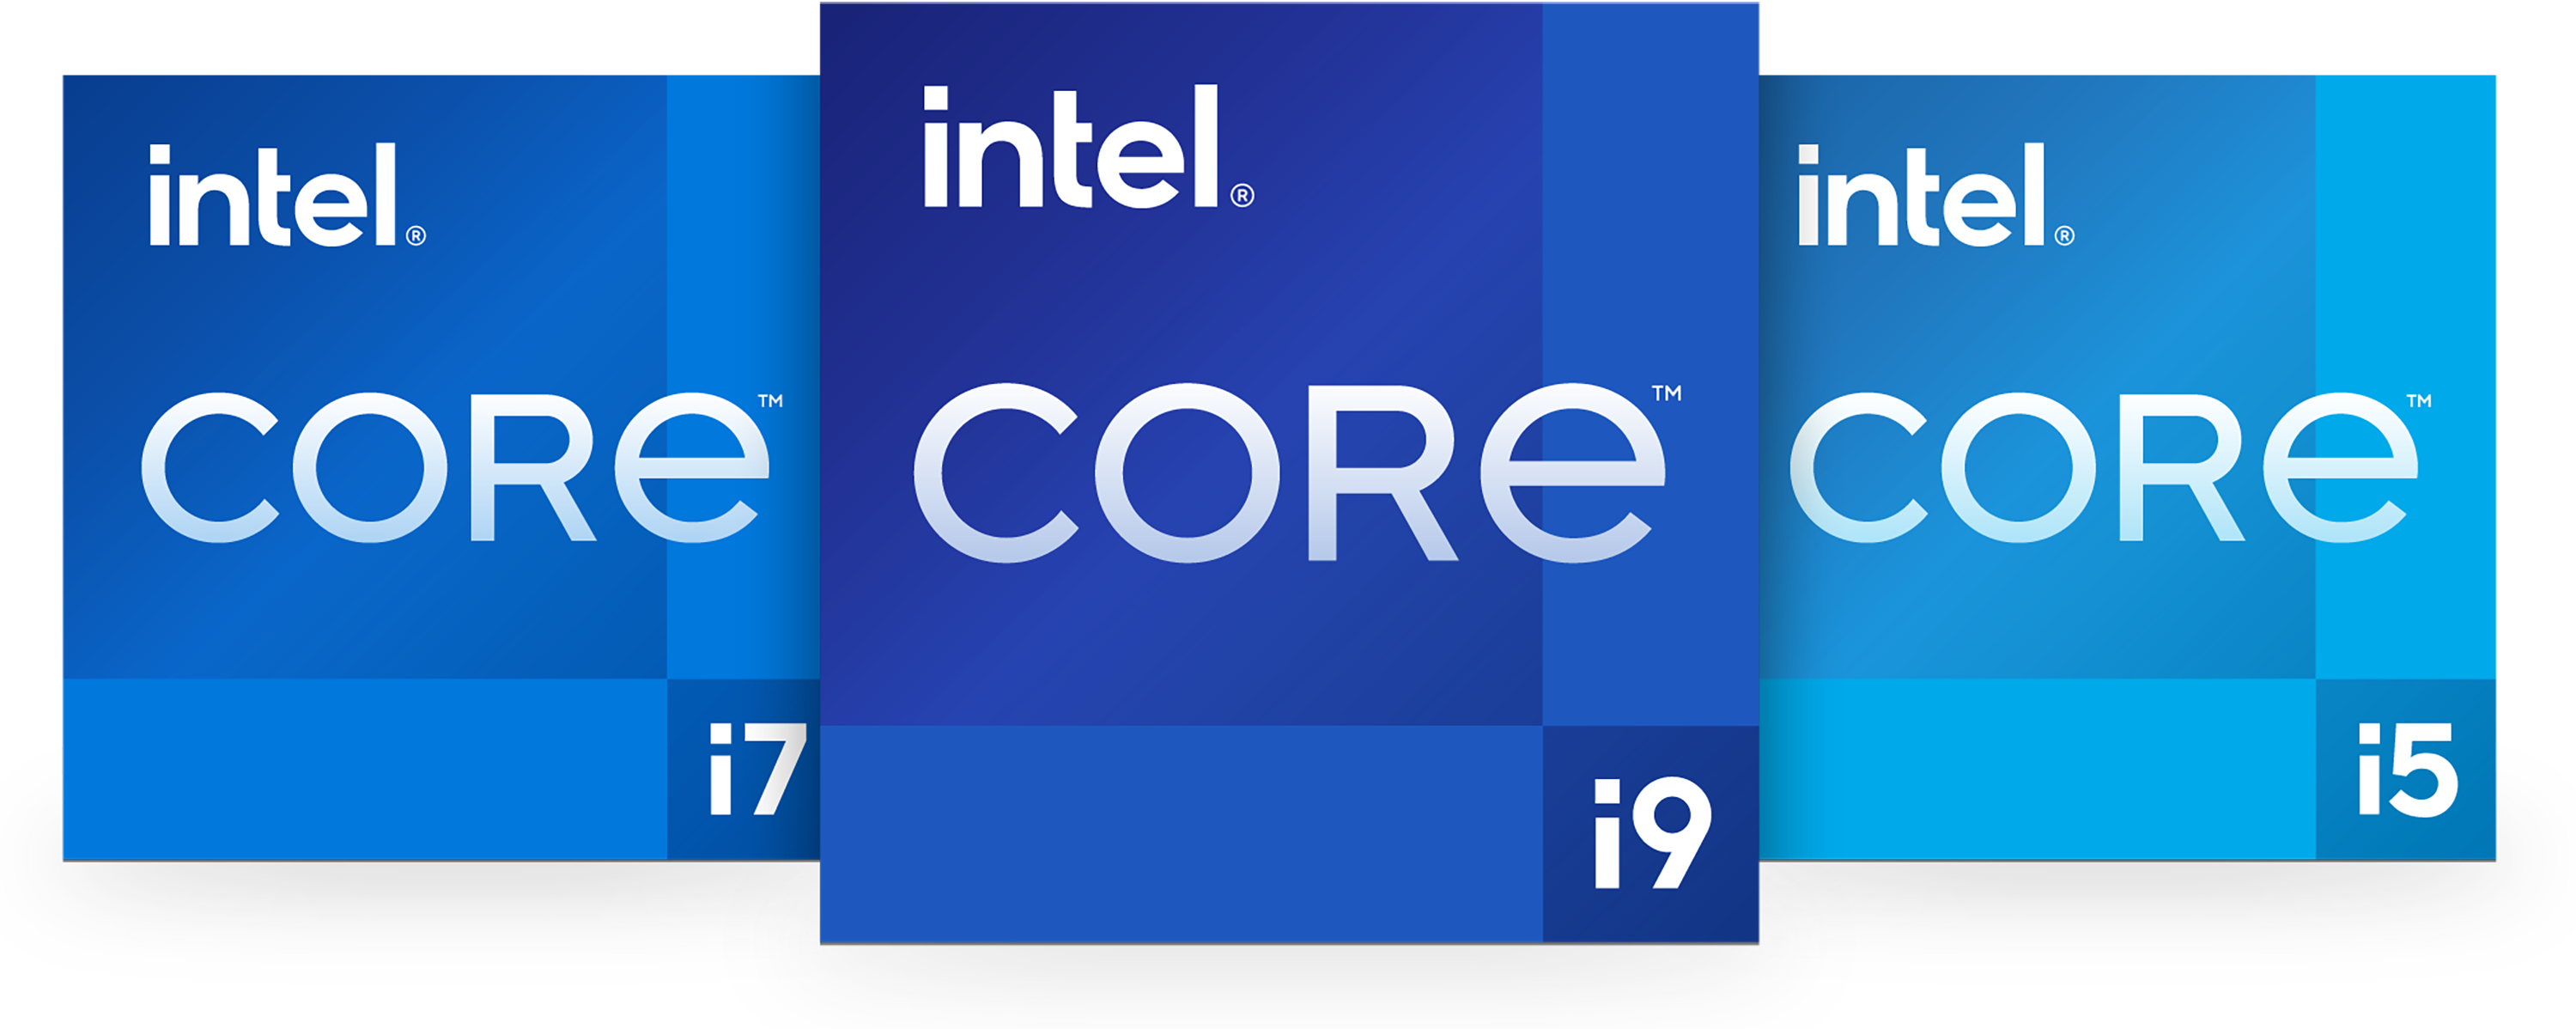 consumer badges อินเทลเปิดตัว Intel Core เจนเนอเรชั่นที่ 11 สำหรับแล็ปท็อป ในรหัส “Tiger Lake H” และ Intel Xeon W 11000 series เจนเนอเรชั่นที่ 11 รุ่นใหม่ล่าสุดอย่างเป็นทางการ 